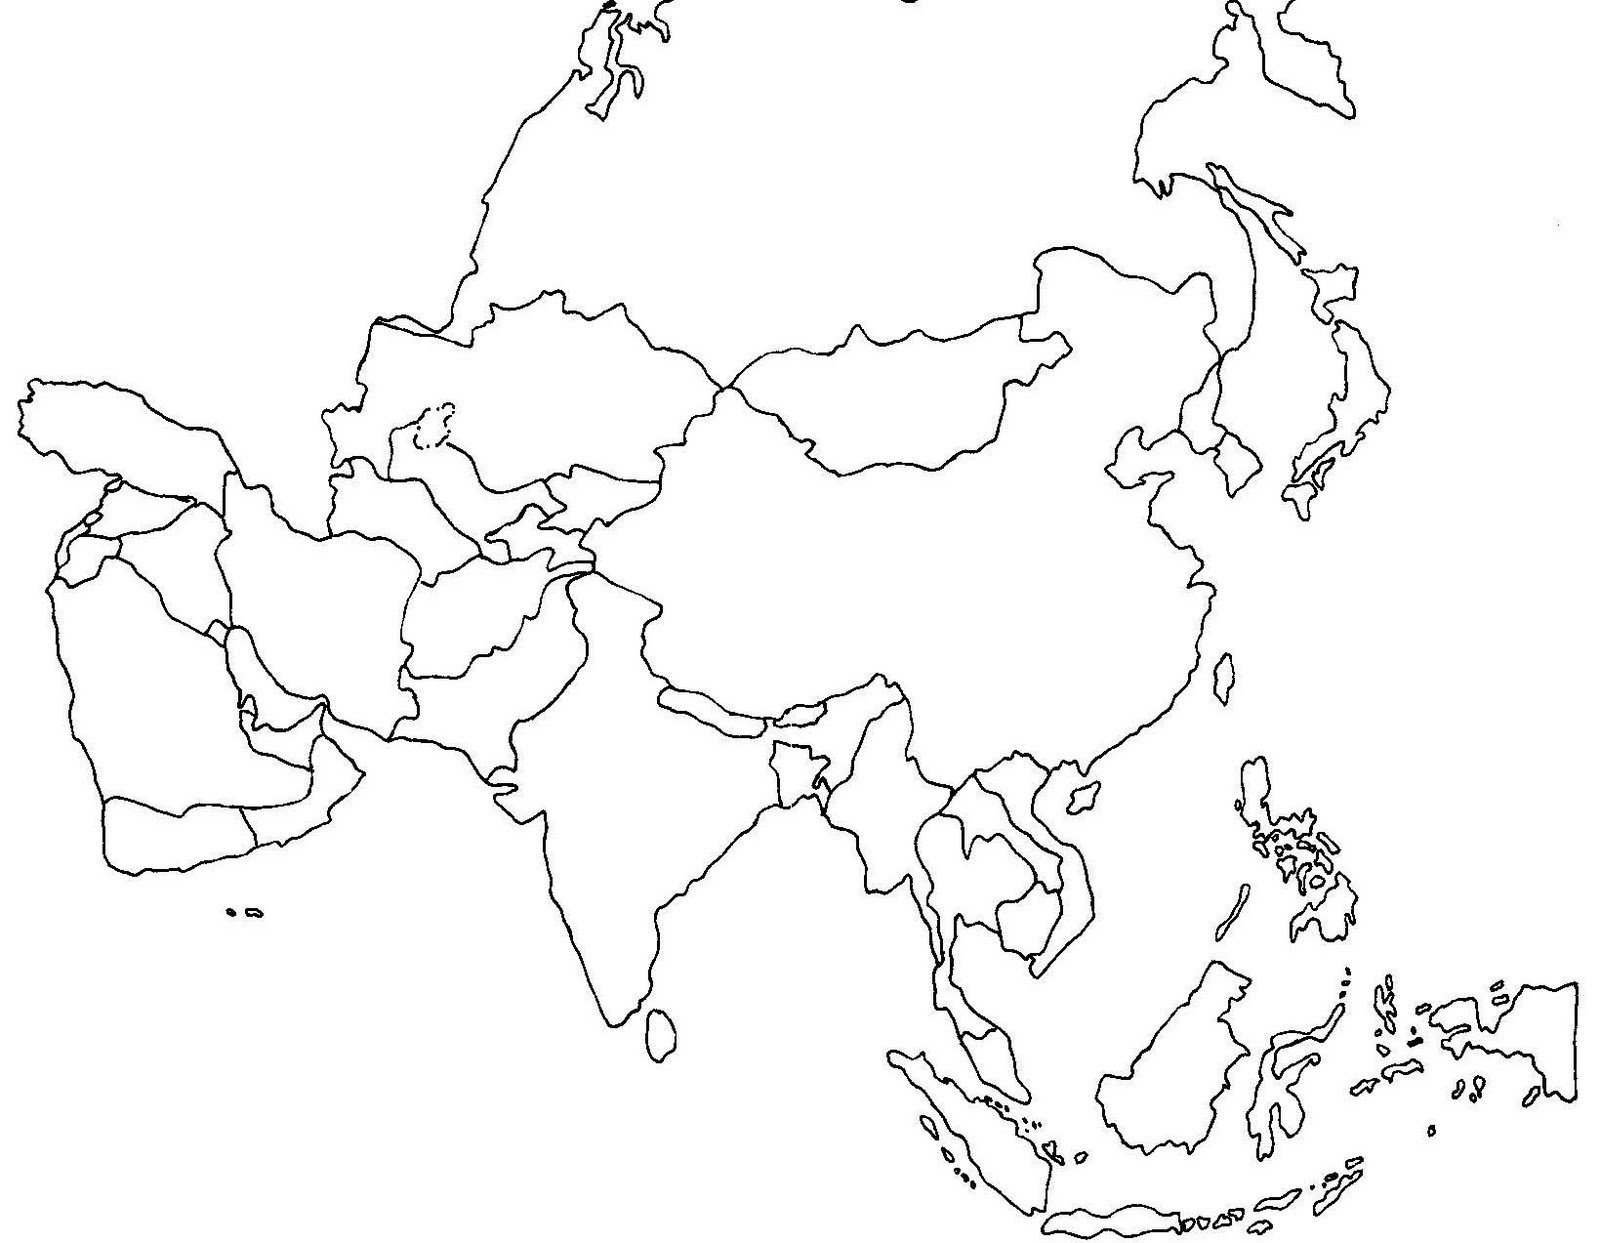 Контурная карта восточной азии. Пустая карта зарубежной Азии с границами государств. Политическая контурная карта Азии с границами государств. Зарубежная Азия политическая карта контурная карта. Азия контурная карта с границами стран.